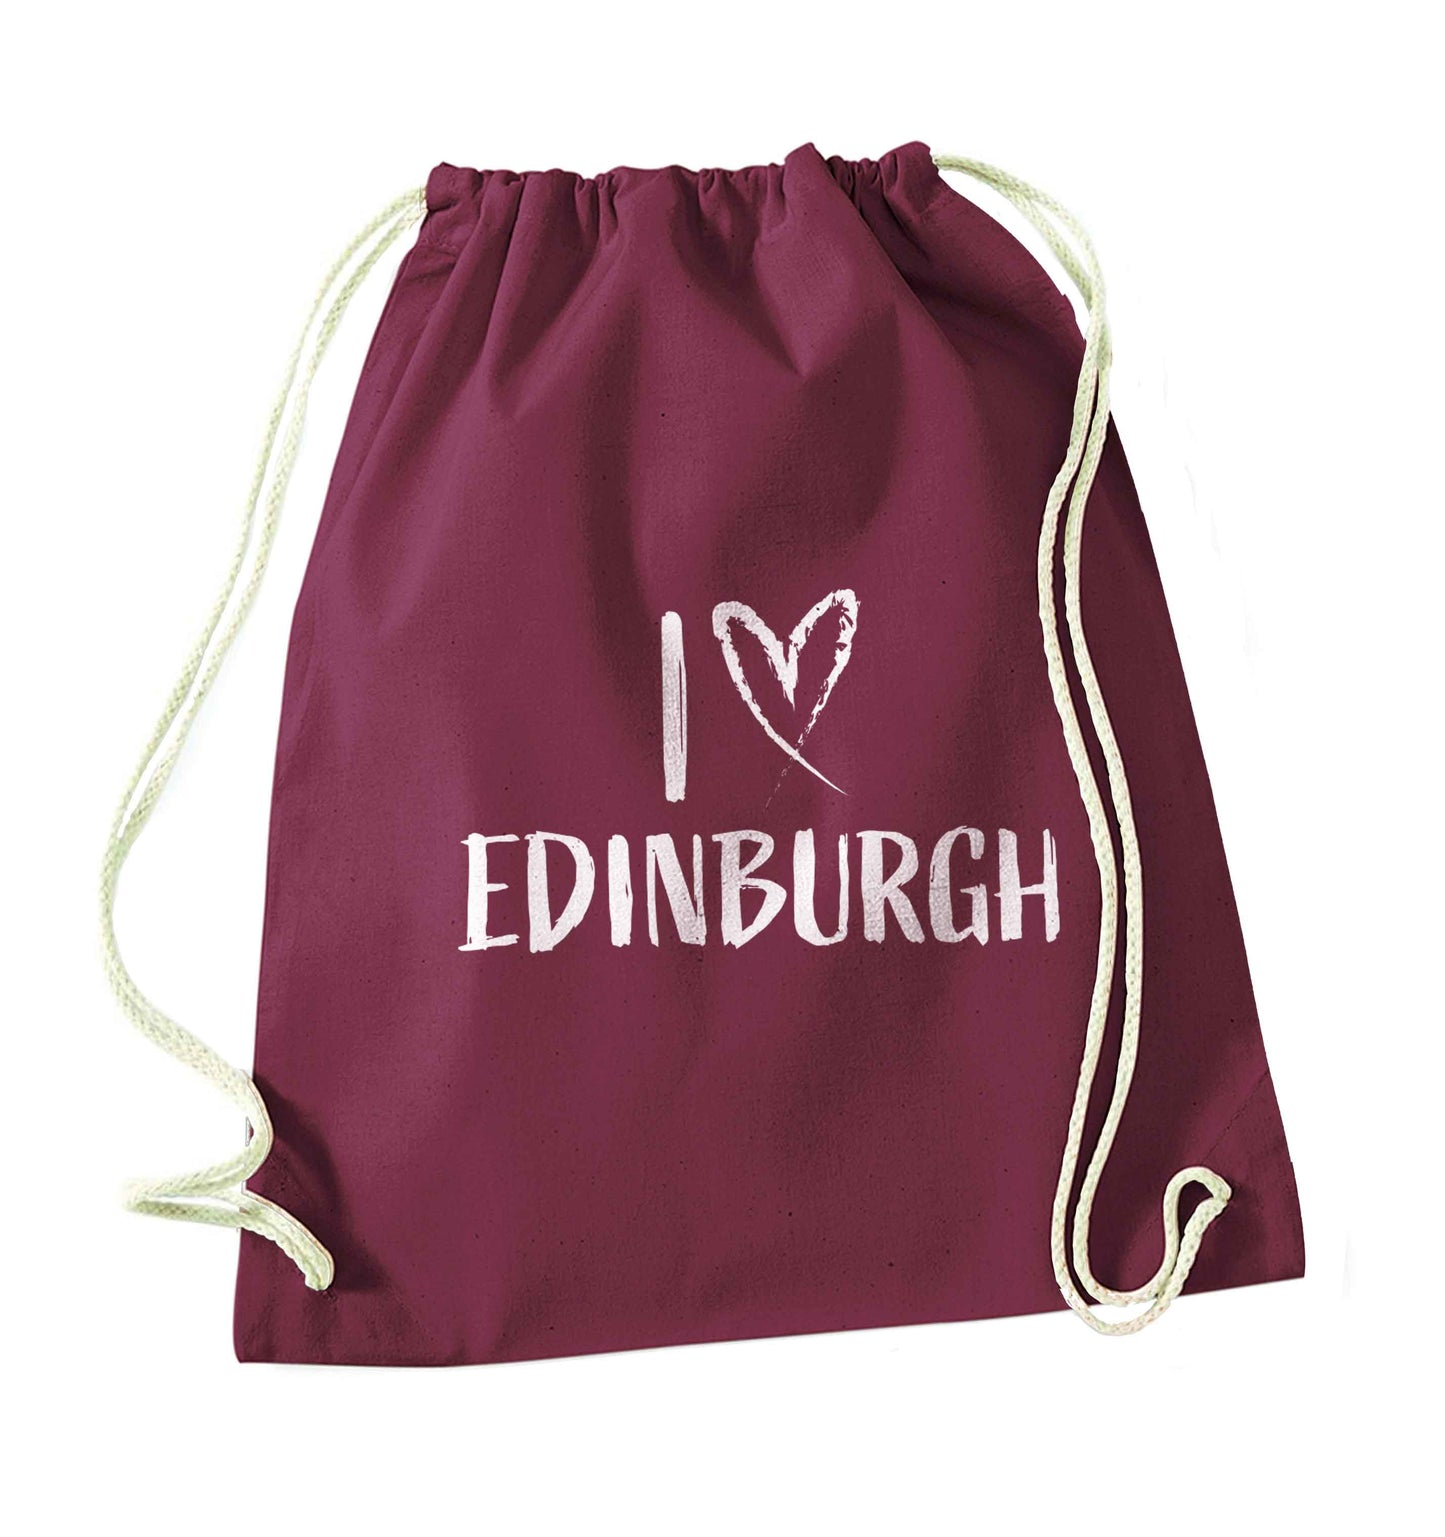 I love Edinburgh maroon drawstring bag